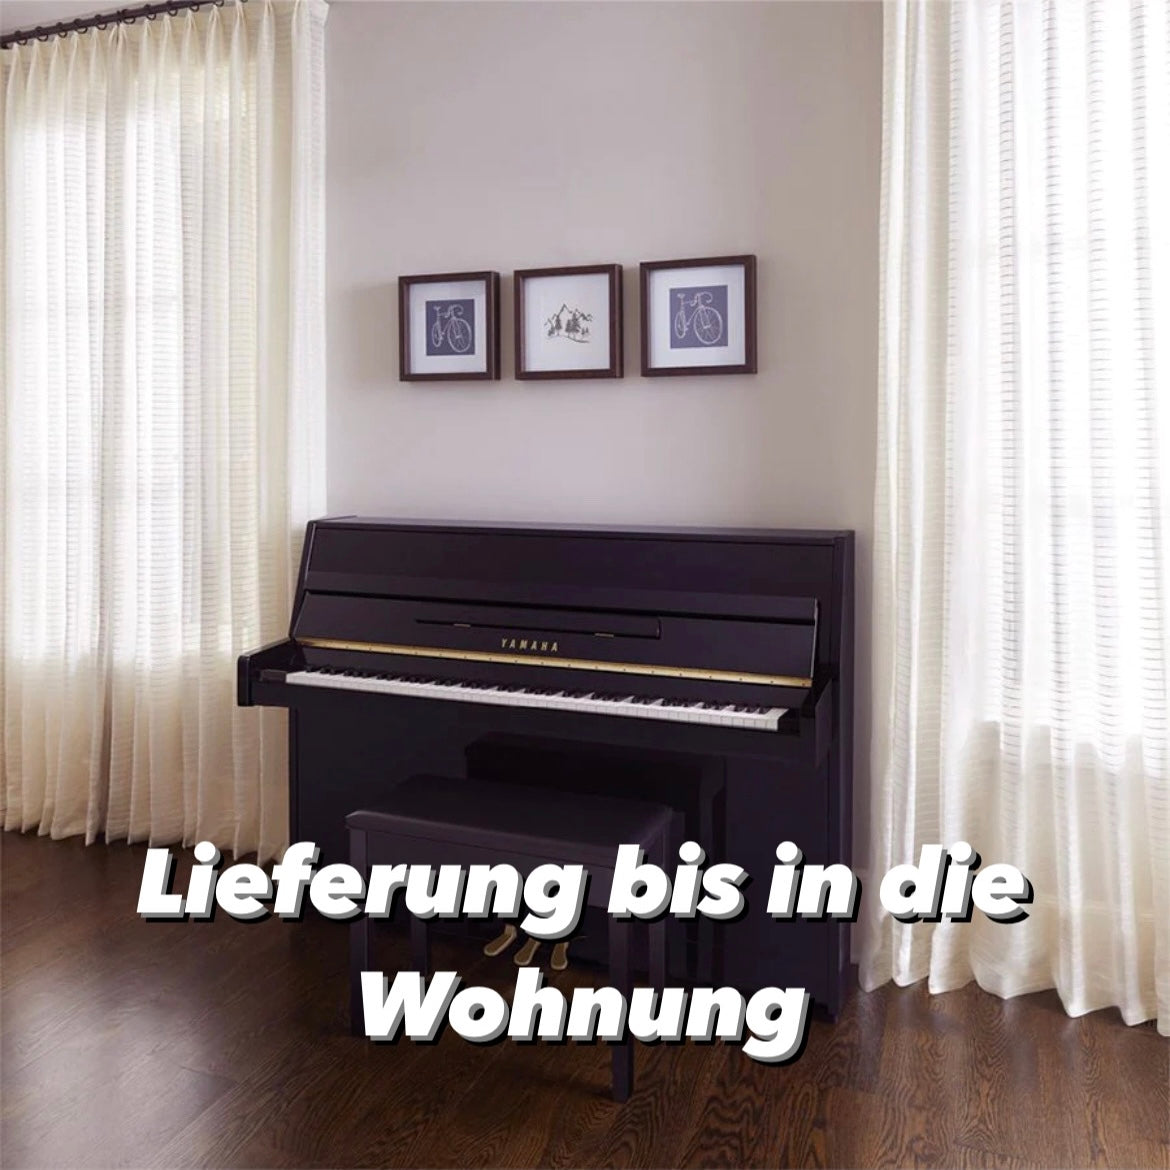 A. GRAND Klavier M 104 Occasion Nussbaum Bj. 1970 made in Germany (gebraucht) - Musik-Ebert Gmbh